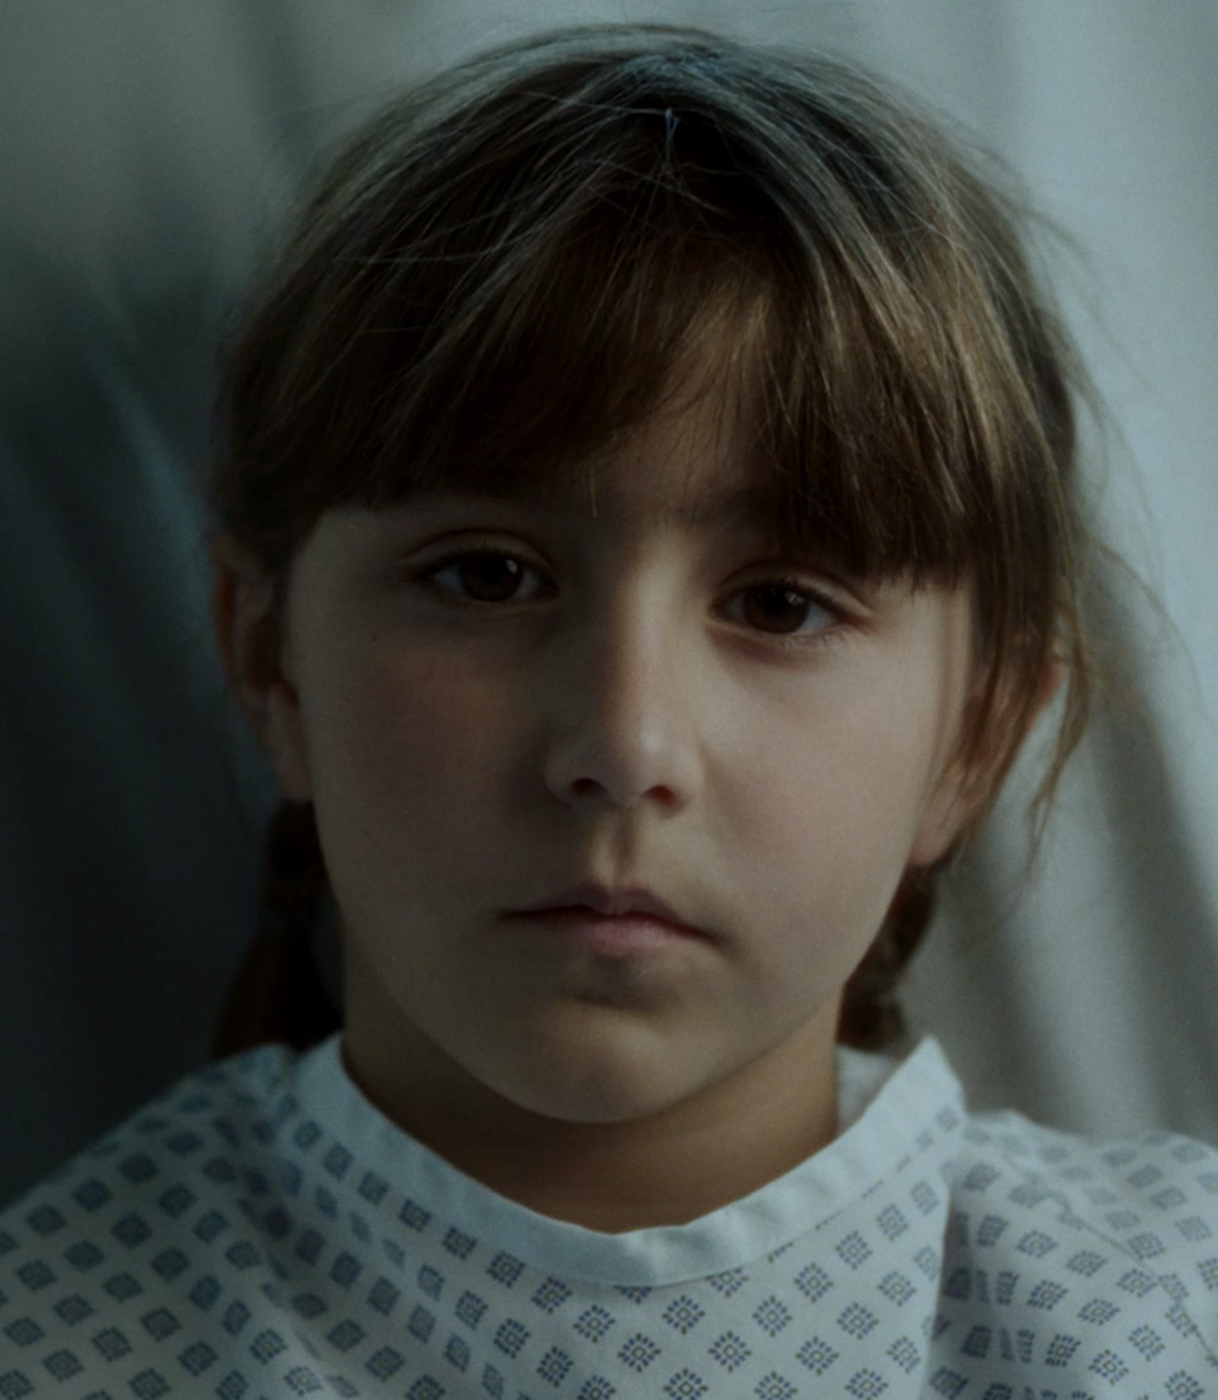 Retrato de una niña pequeña en la cama de un hospital